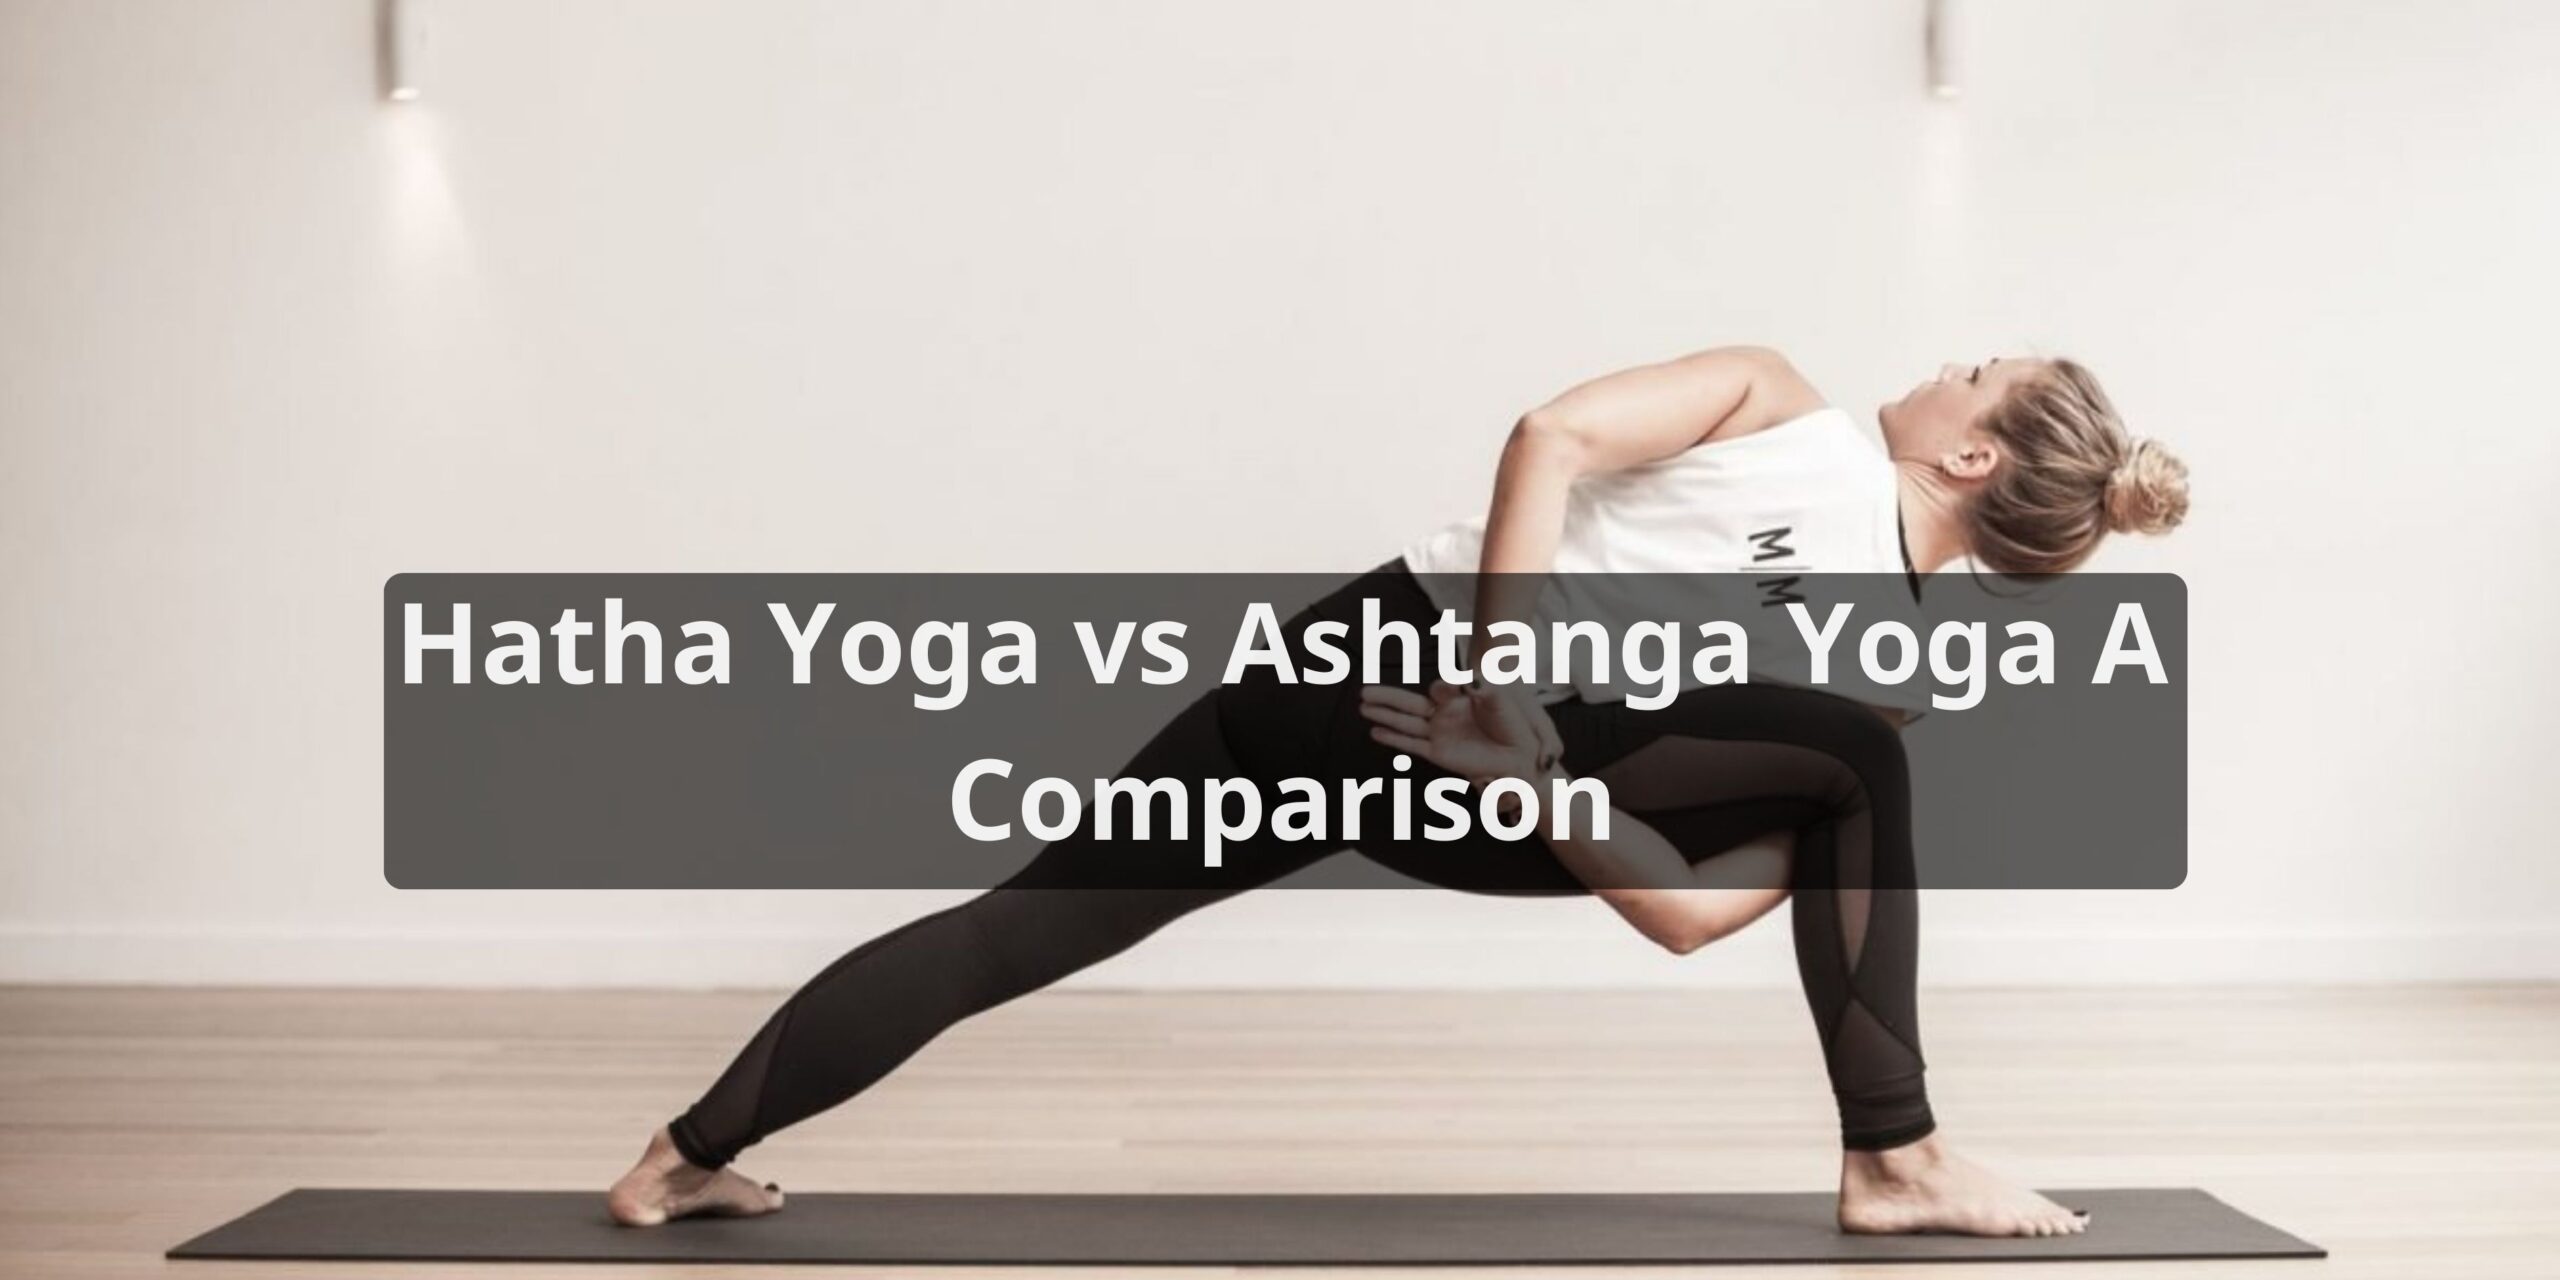 Hatha Yoga vs Ashtanga Yoga Comparison